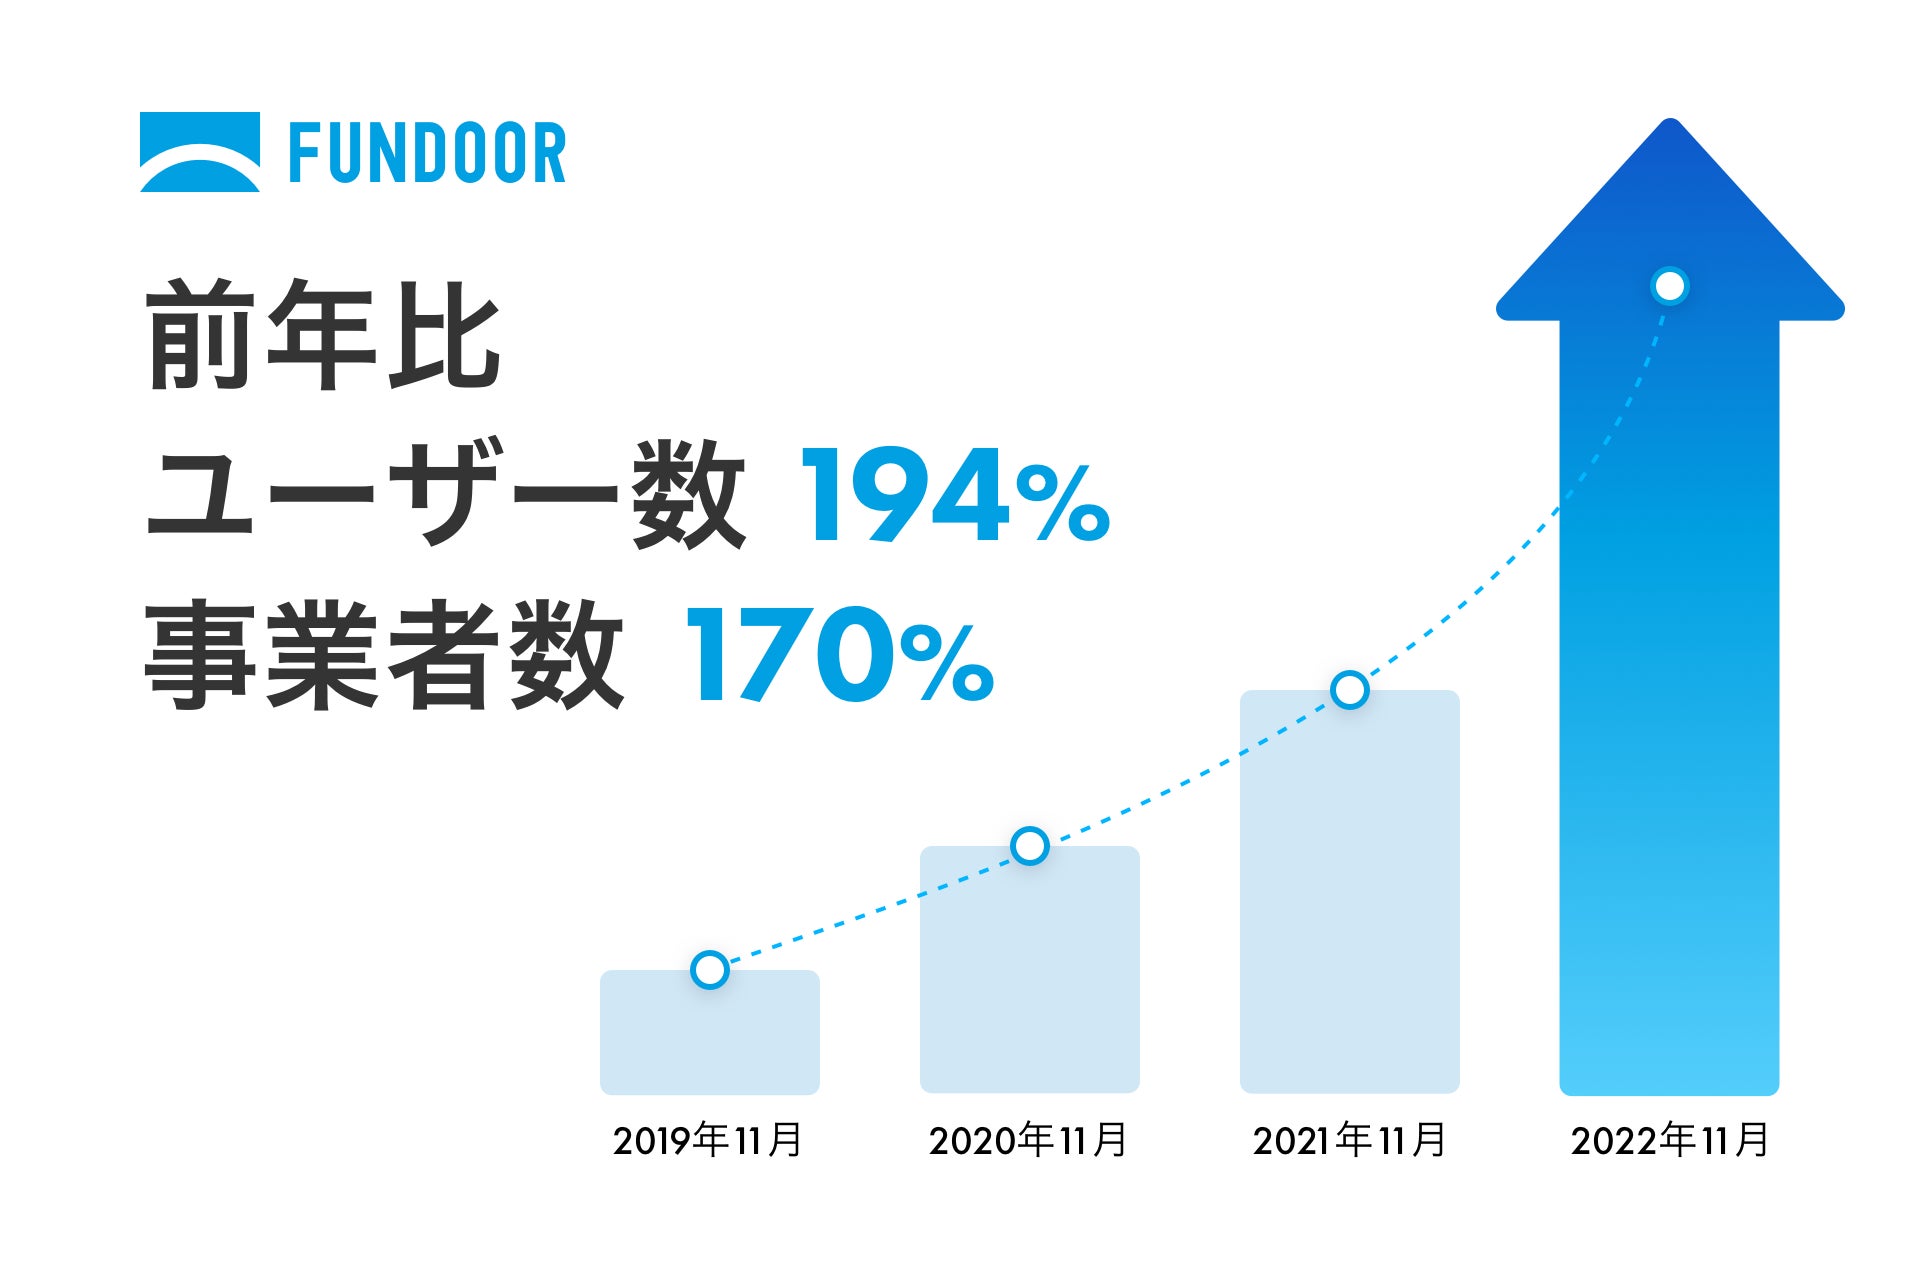 クラウド経営管理ソフト「FUNDOOR」ユーザー数が3,600人超え、事業者登録数が2,600社突破